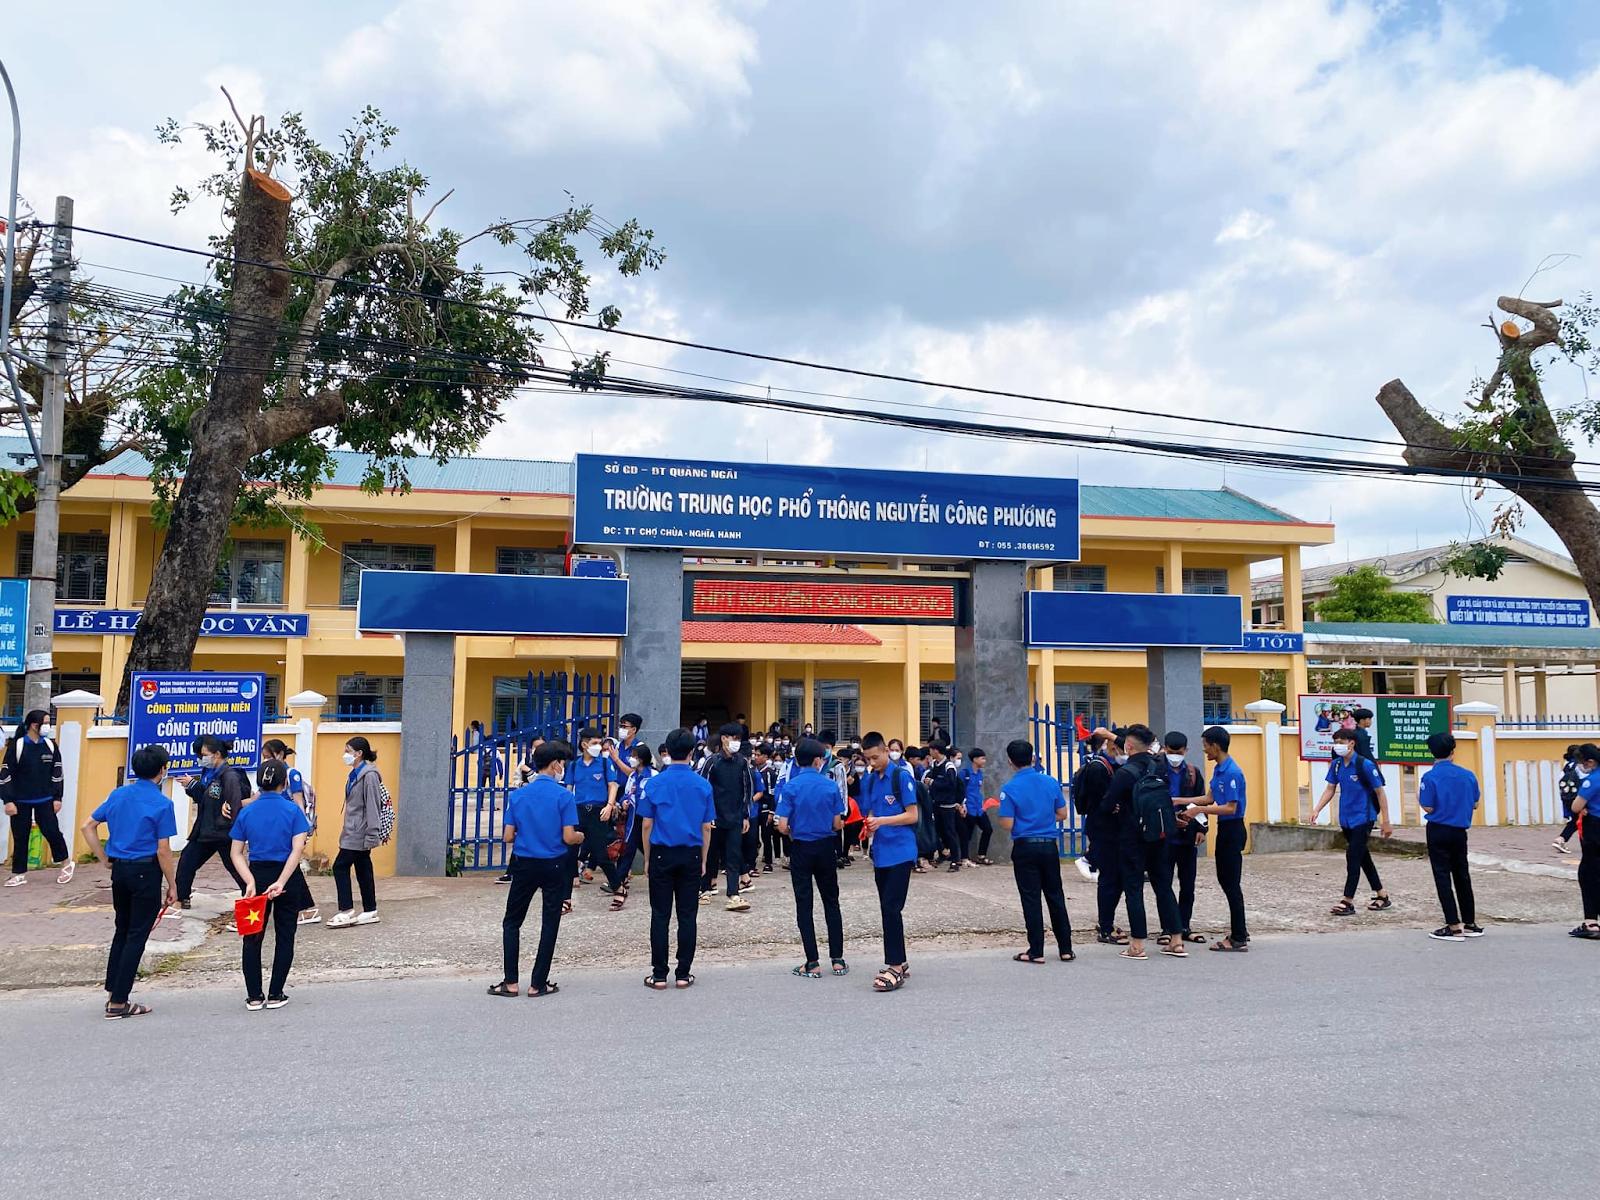 Đánh Giá Trường THPT  Nguyễn Công Phương Quảng Ngãi Có Tốt Không